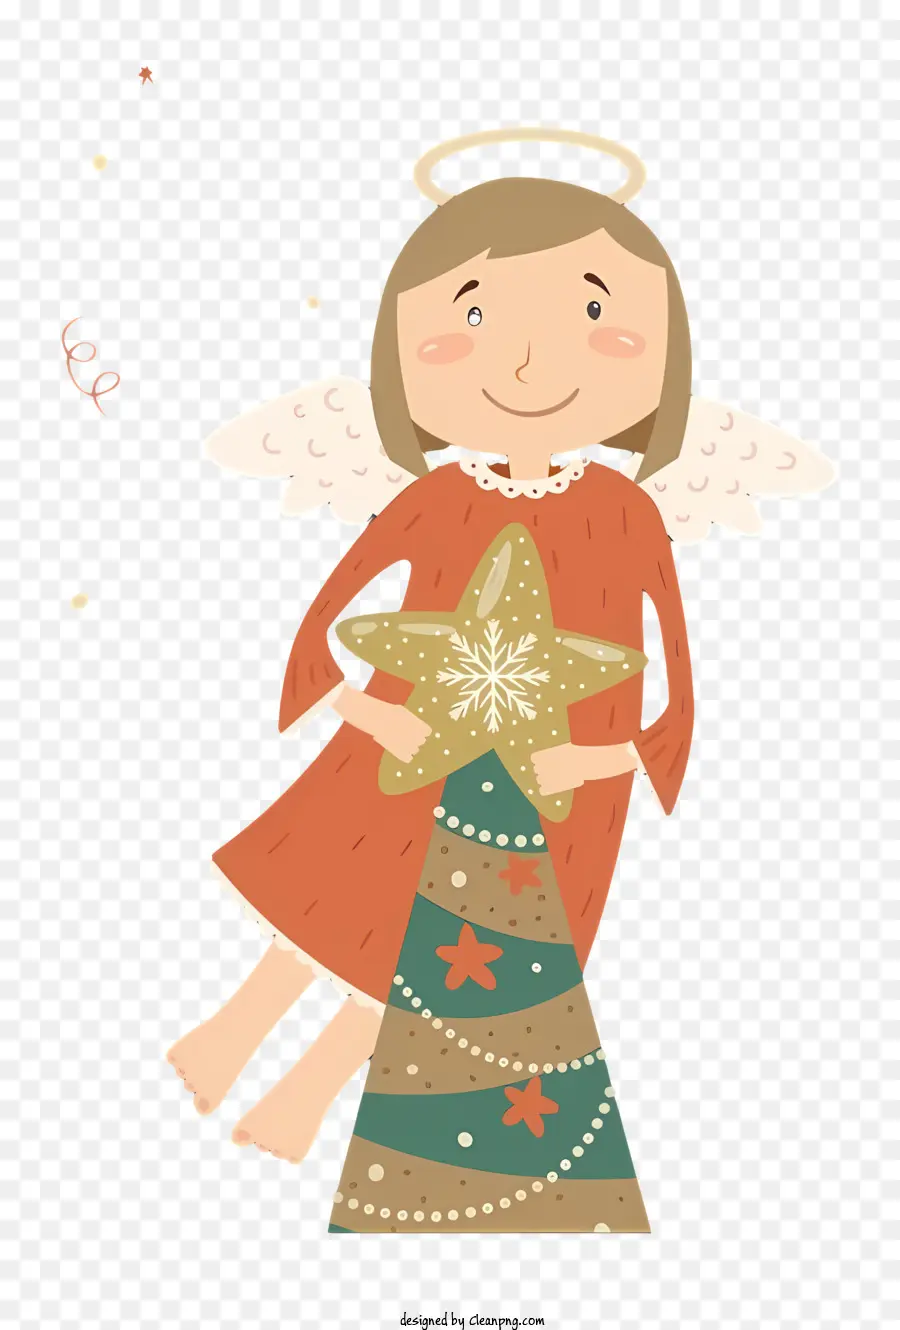 Weihnachtsbaum - Illustration: kleines Mädchen im Engel Kostüm am Weihnachtsbaum